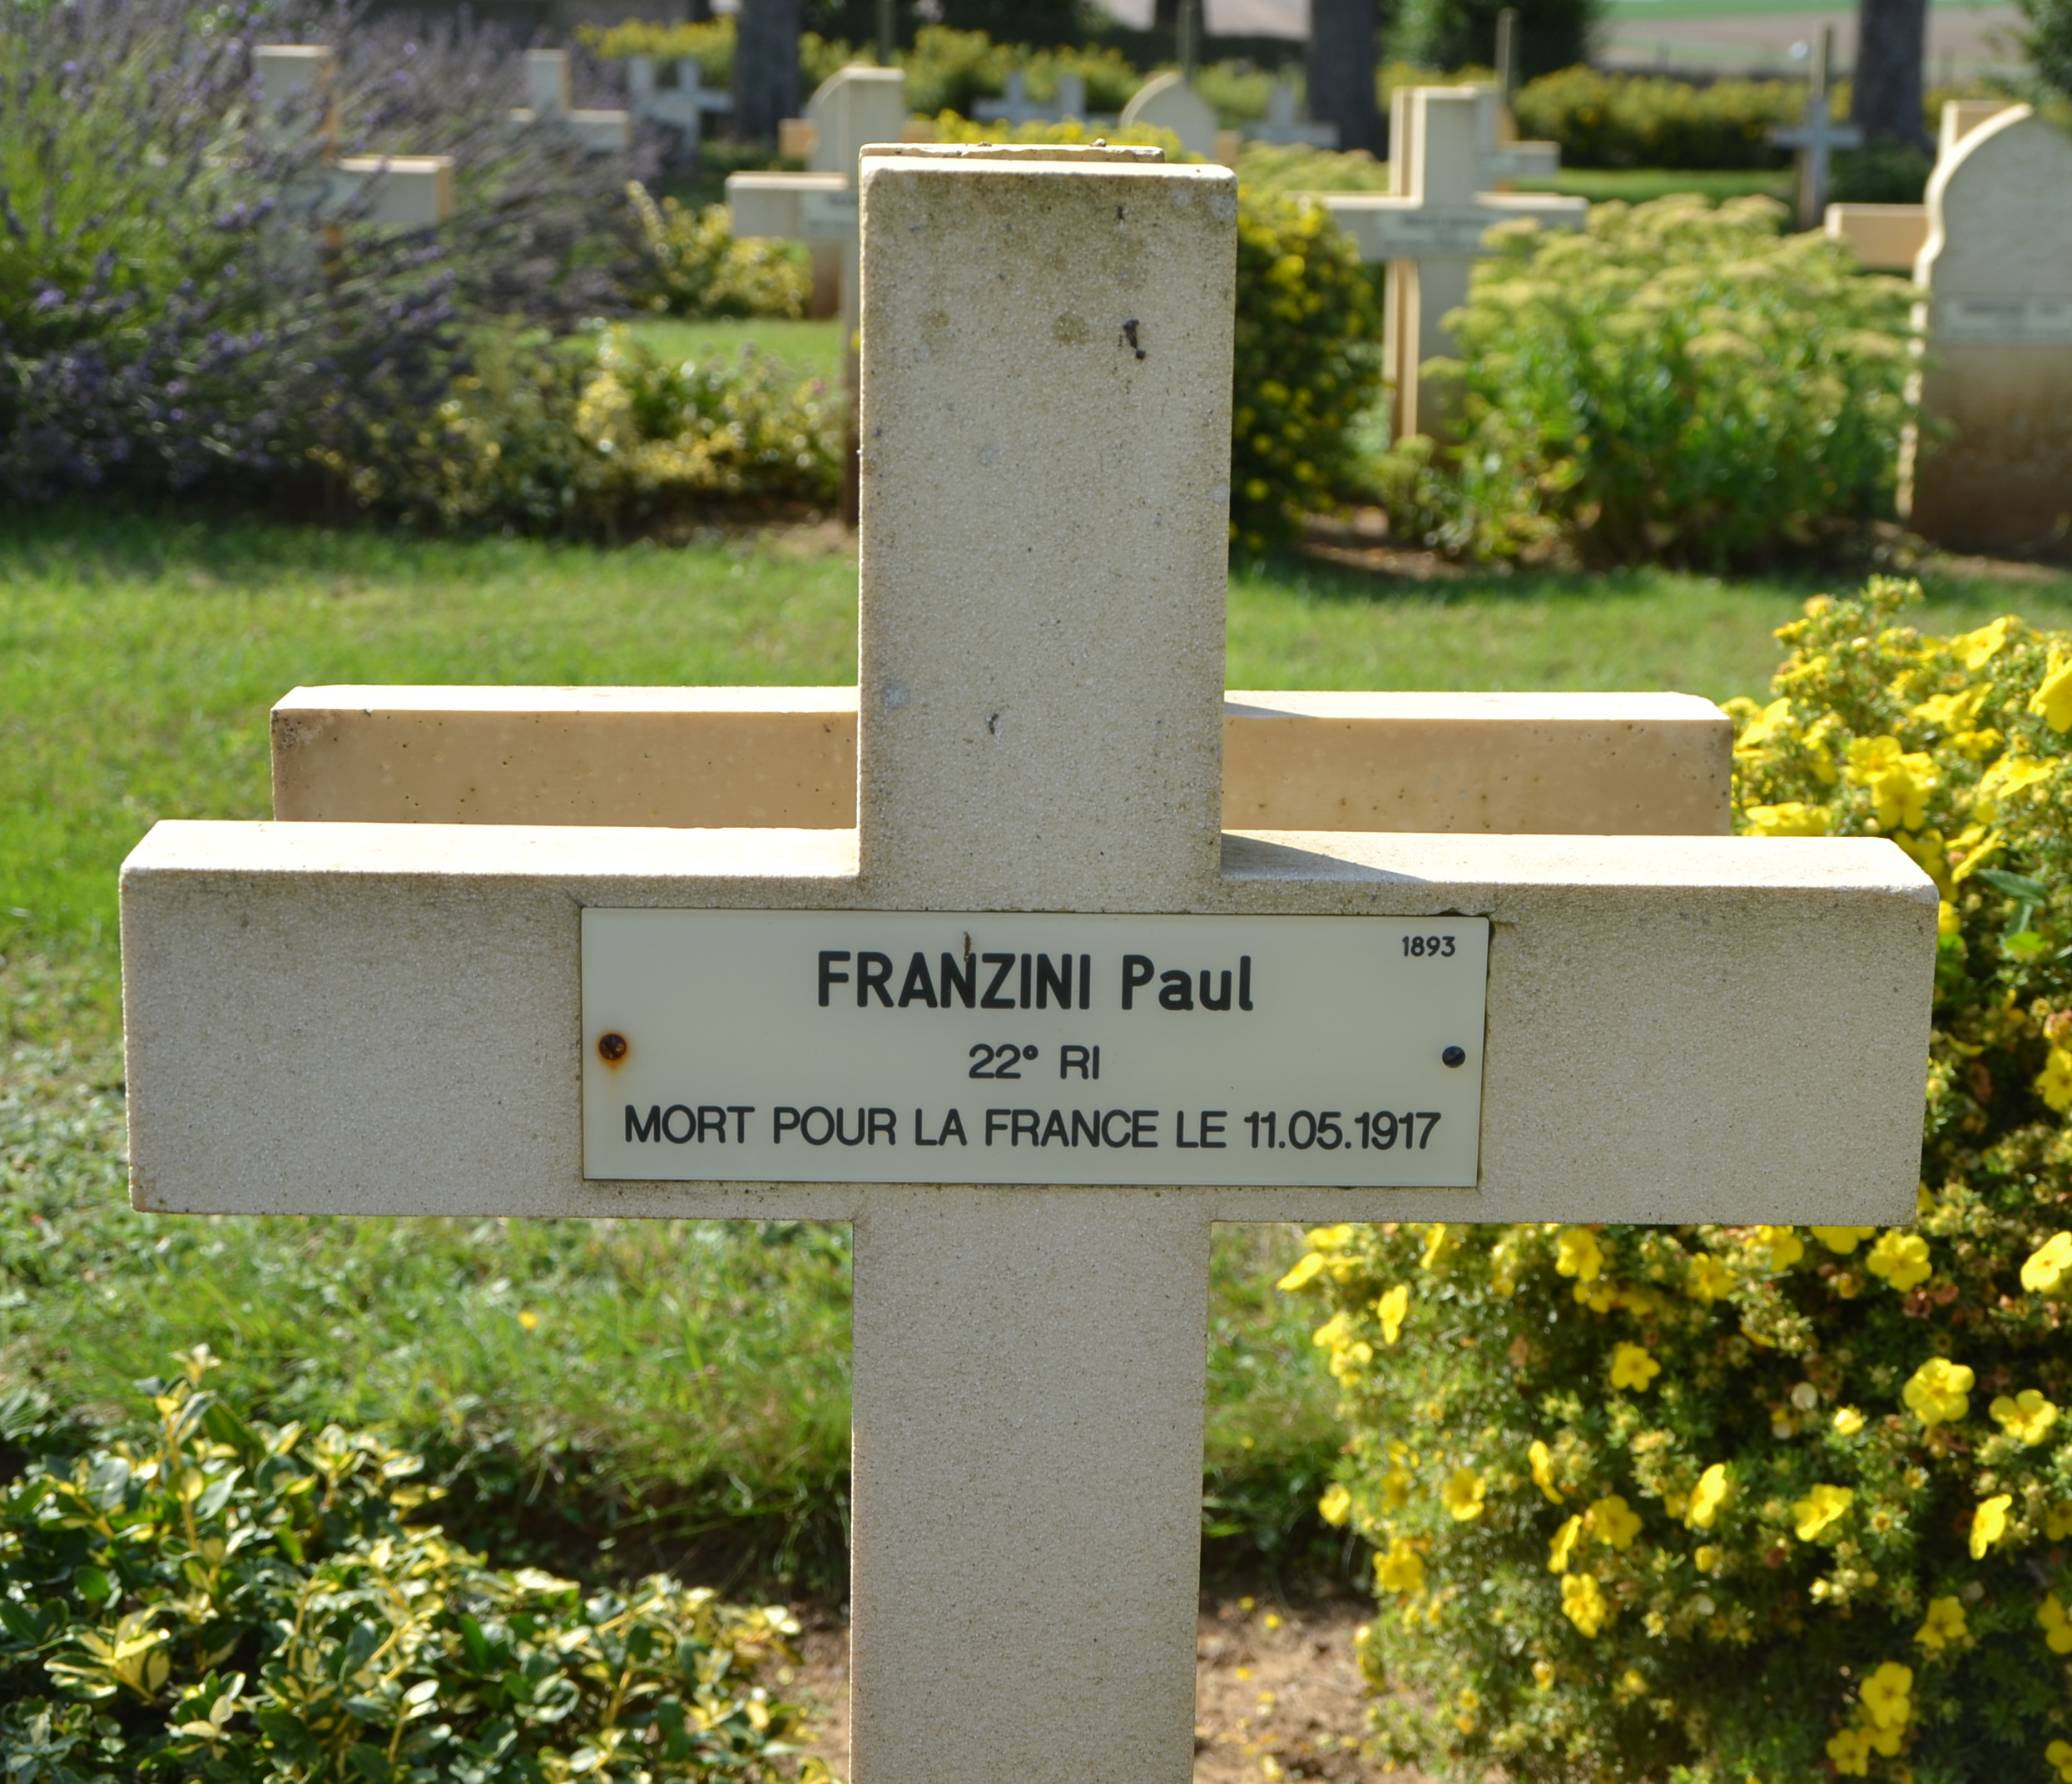 Franzini Paul sépulture à Cerny en Laonnois (Aisne)